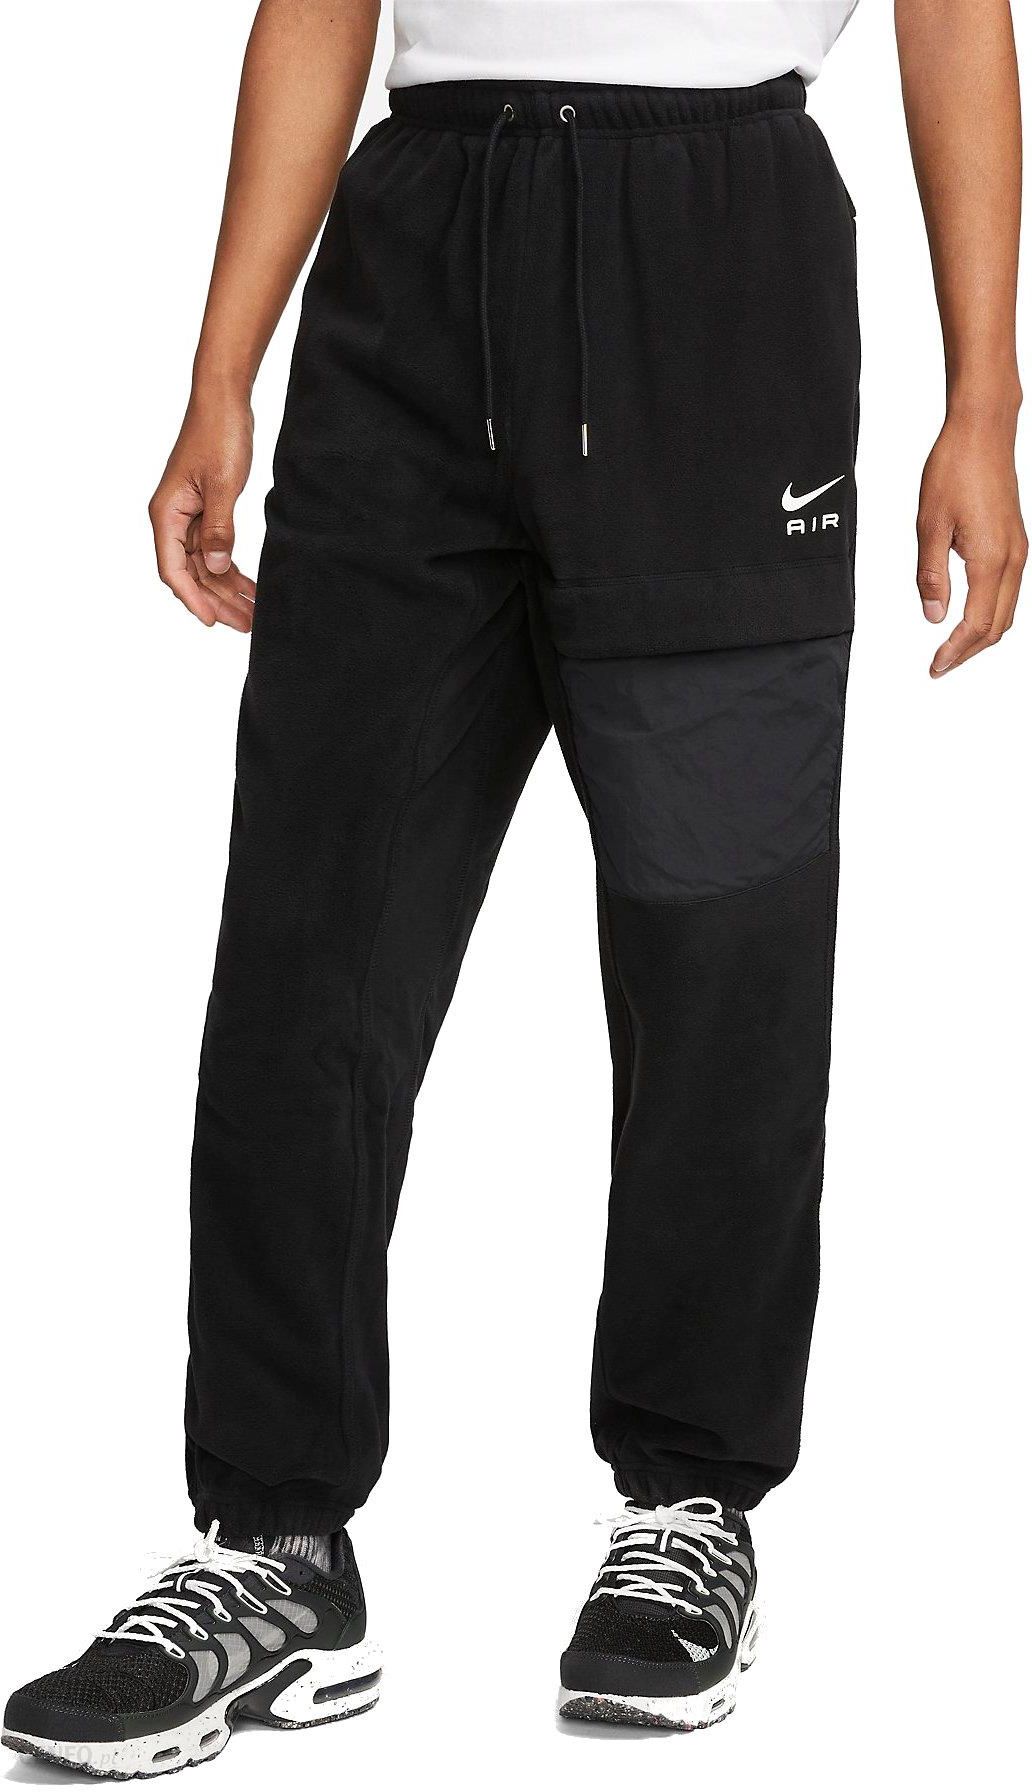 Spodnie Nike Yoga Dri-Fit - DM7037-010 - Ceny i opinie 